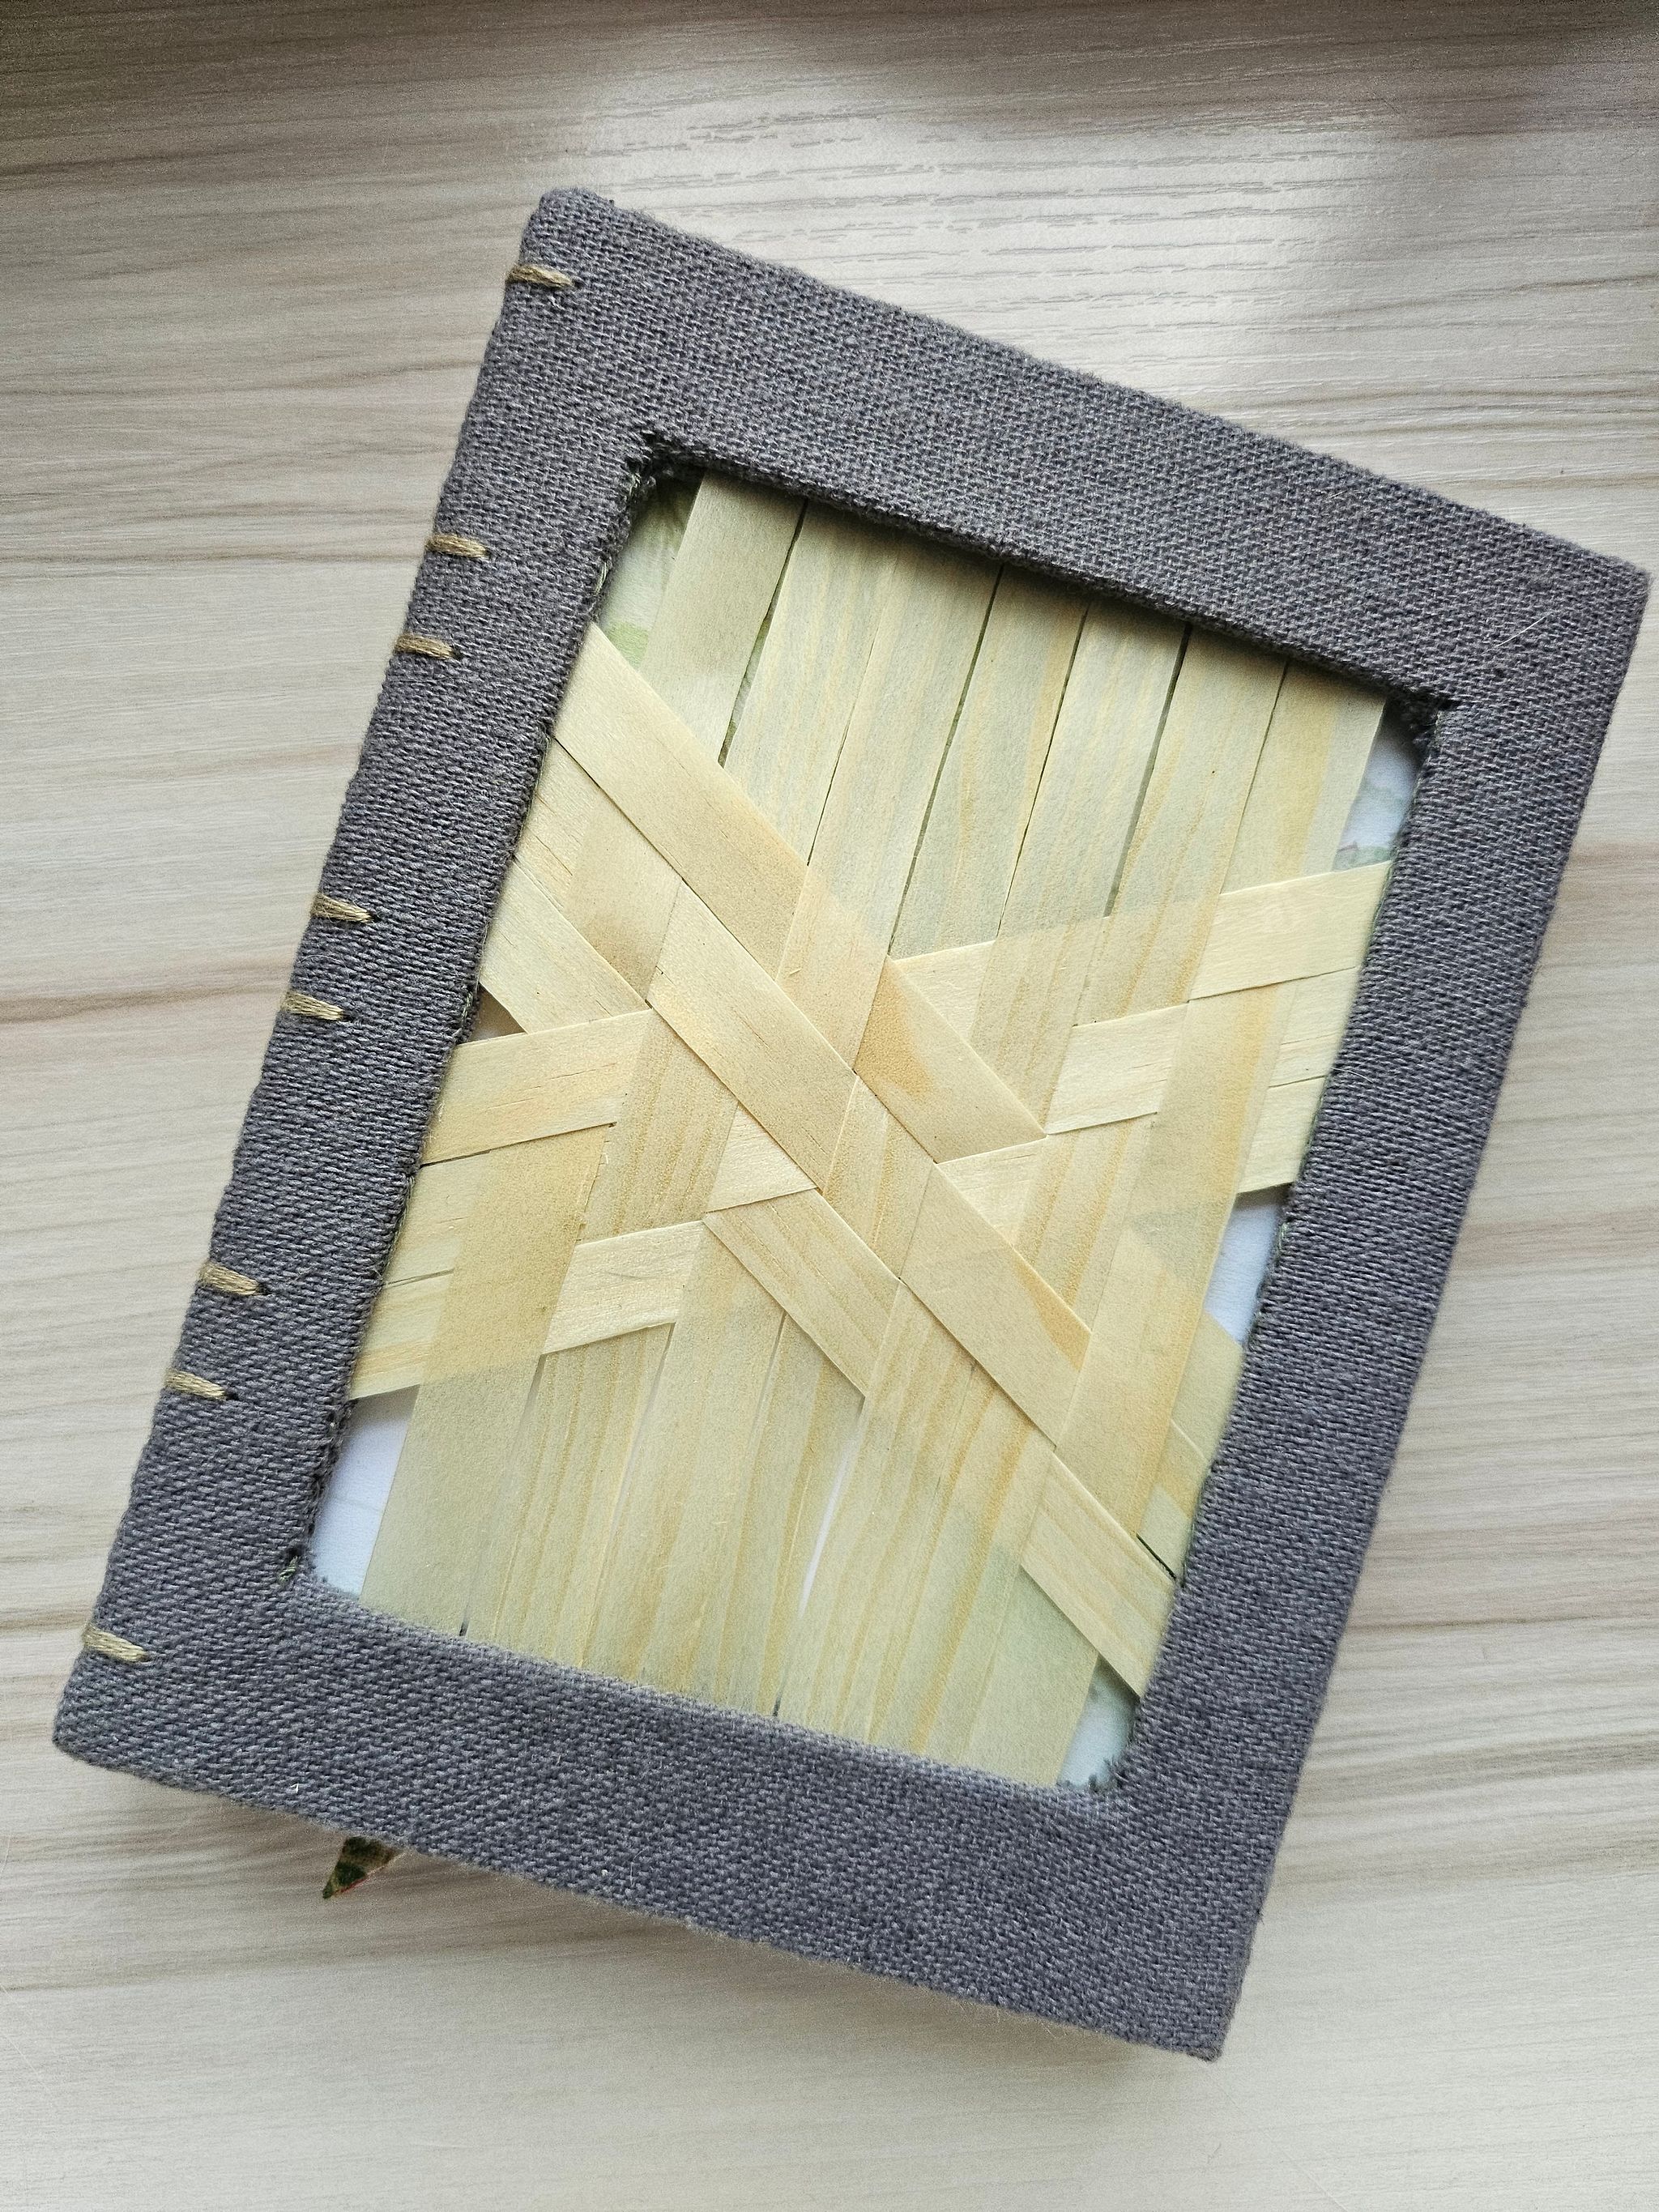 Woven [Japan Bamboo] - Motif 4